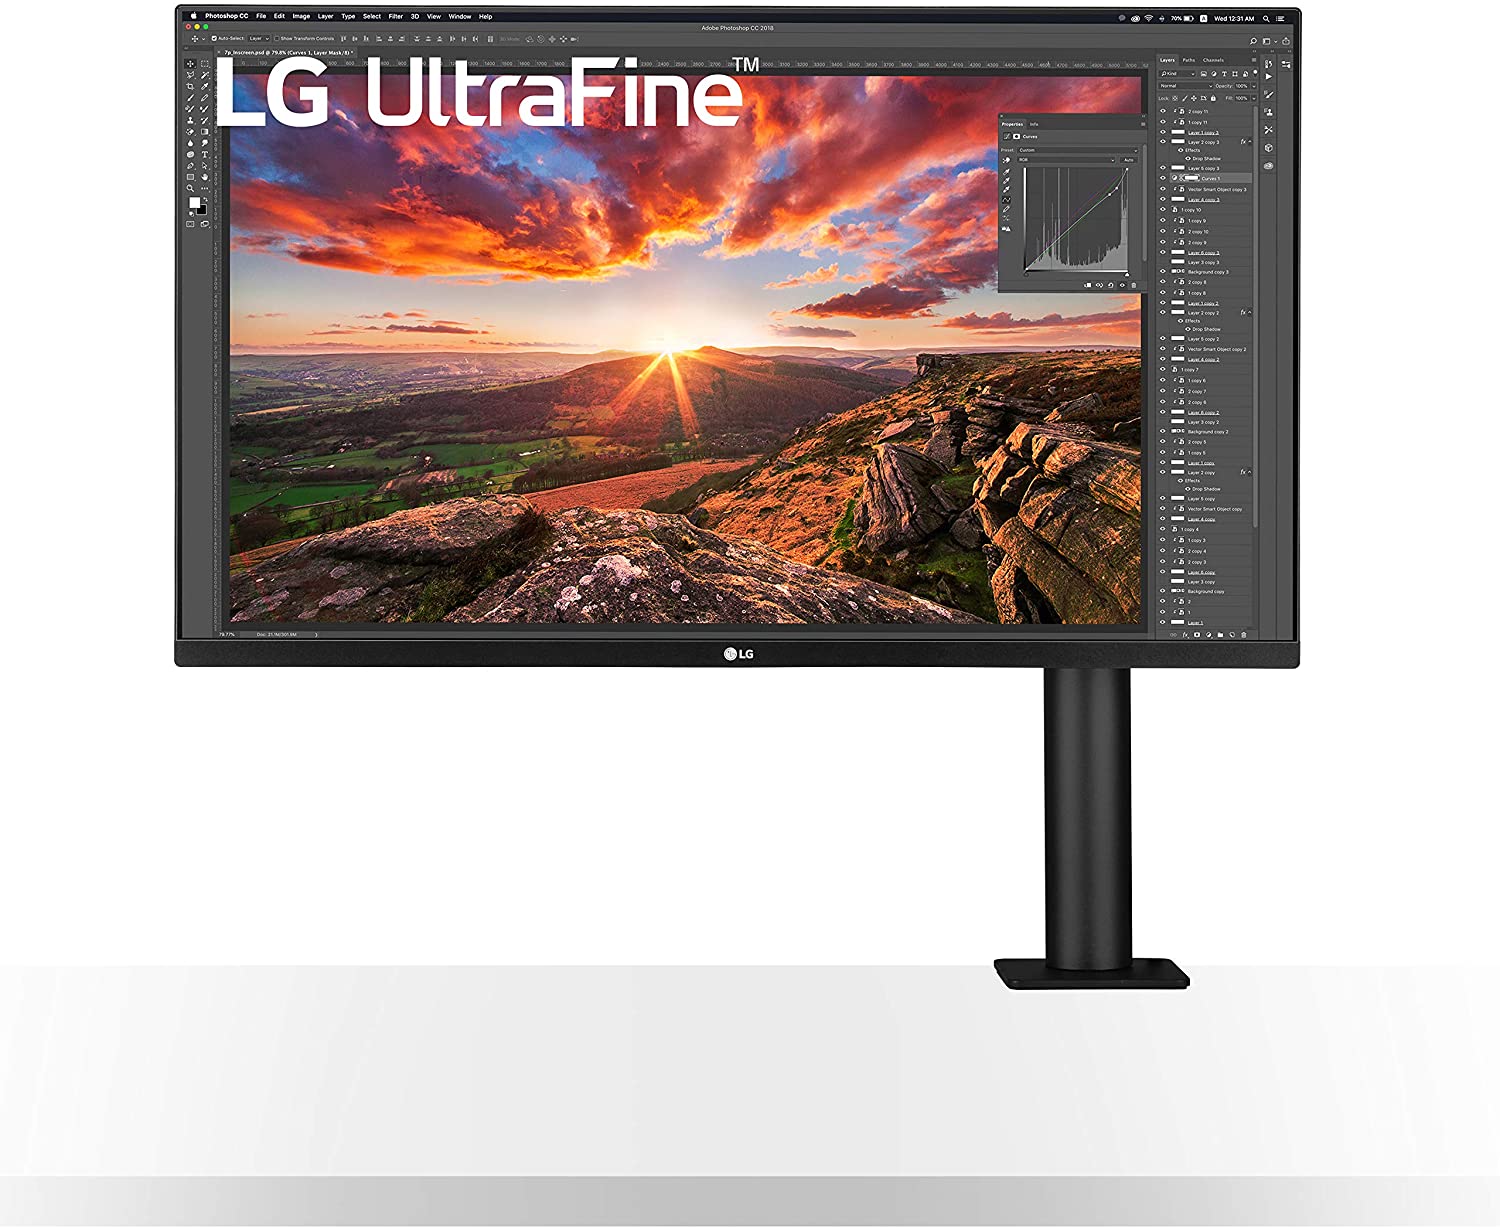 The LG 32UN880-B Ultrafine Ergo monitor.